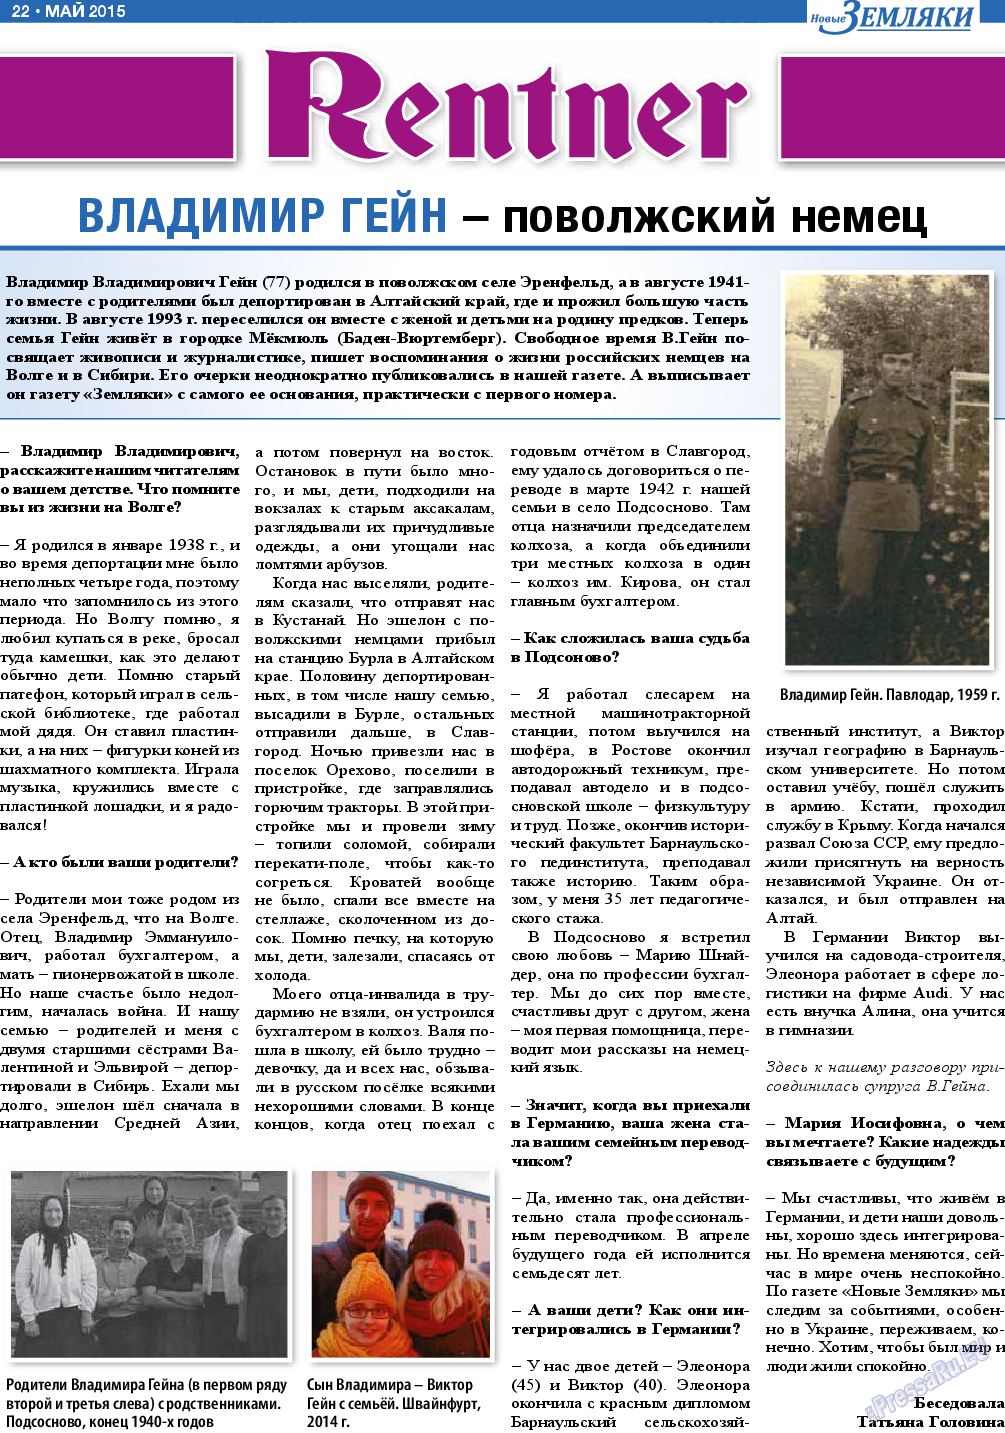 Новые Земляки (газета). 2015 год, номер 5, стр. 22